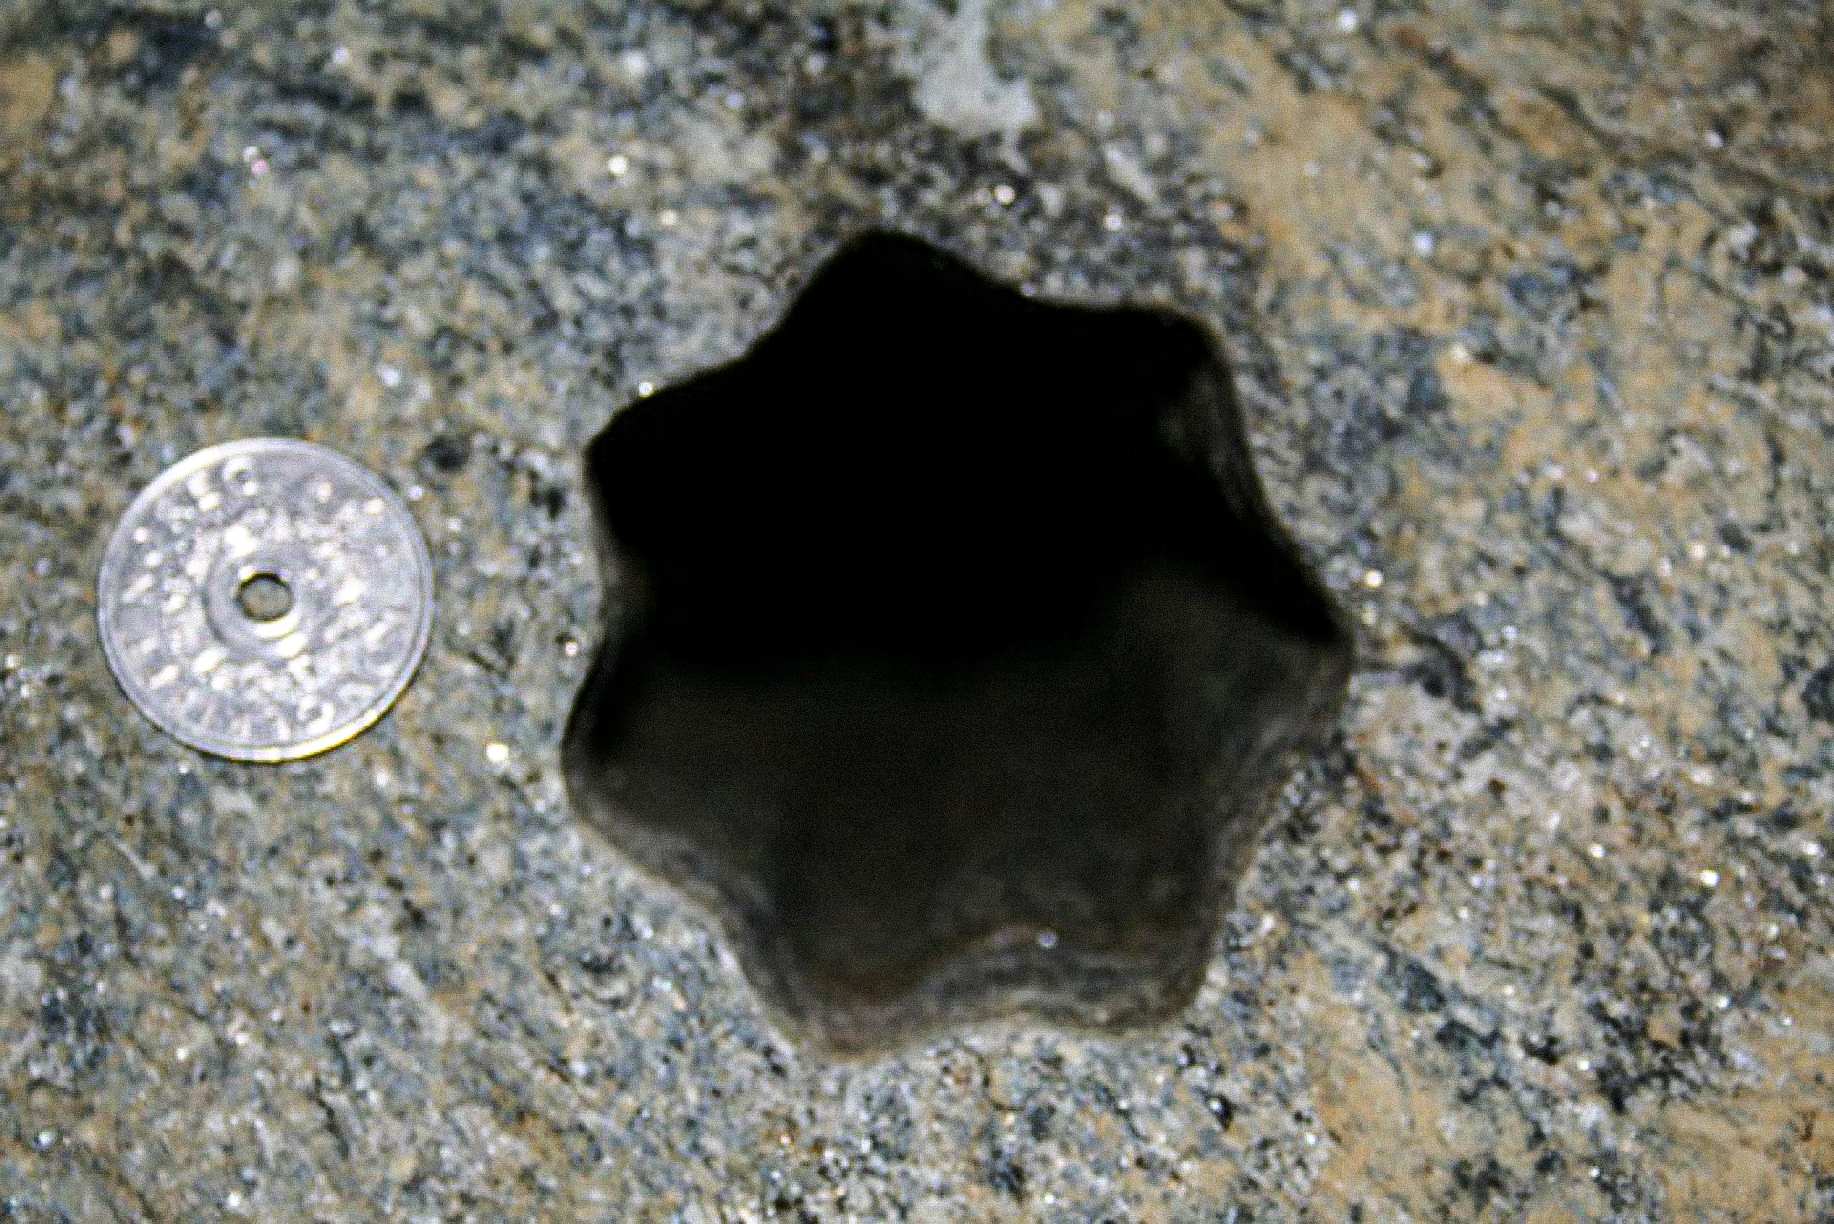 To luknjo v obliki zvezde (s sedmimi stranicami) so izvajalci odkrili v petek, 30. novembra 2007, v Voldi na Norveškem. Norveški kovanec za 5 kron ima premer 25 mm. Luknja je premera cca 65 - 70 mm.